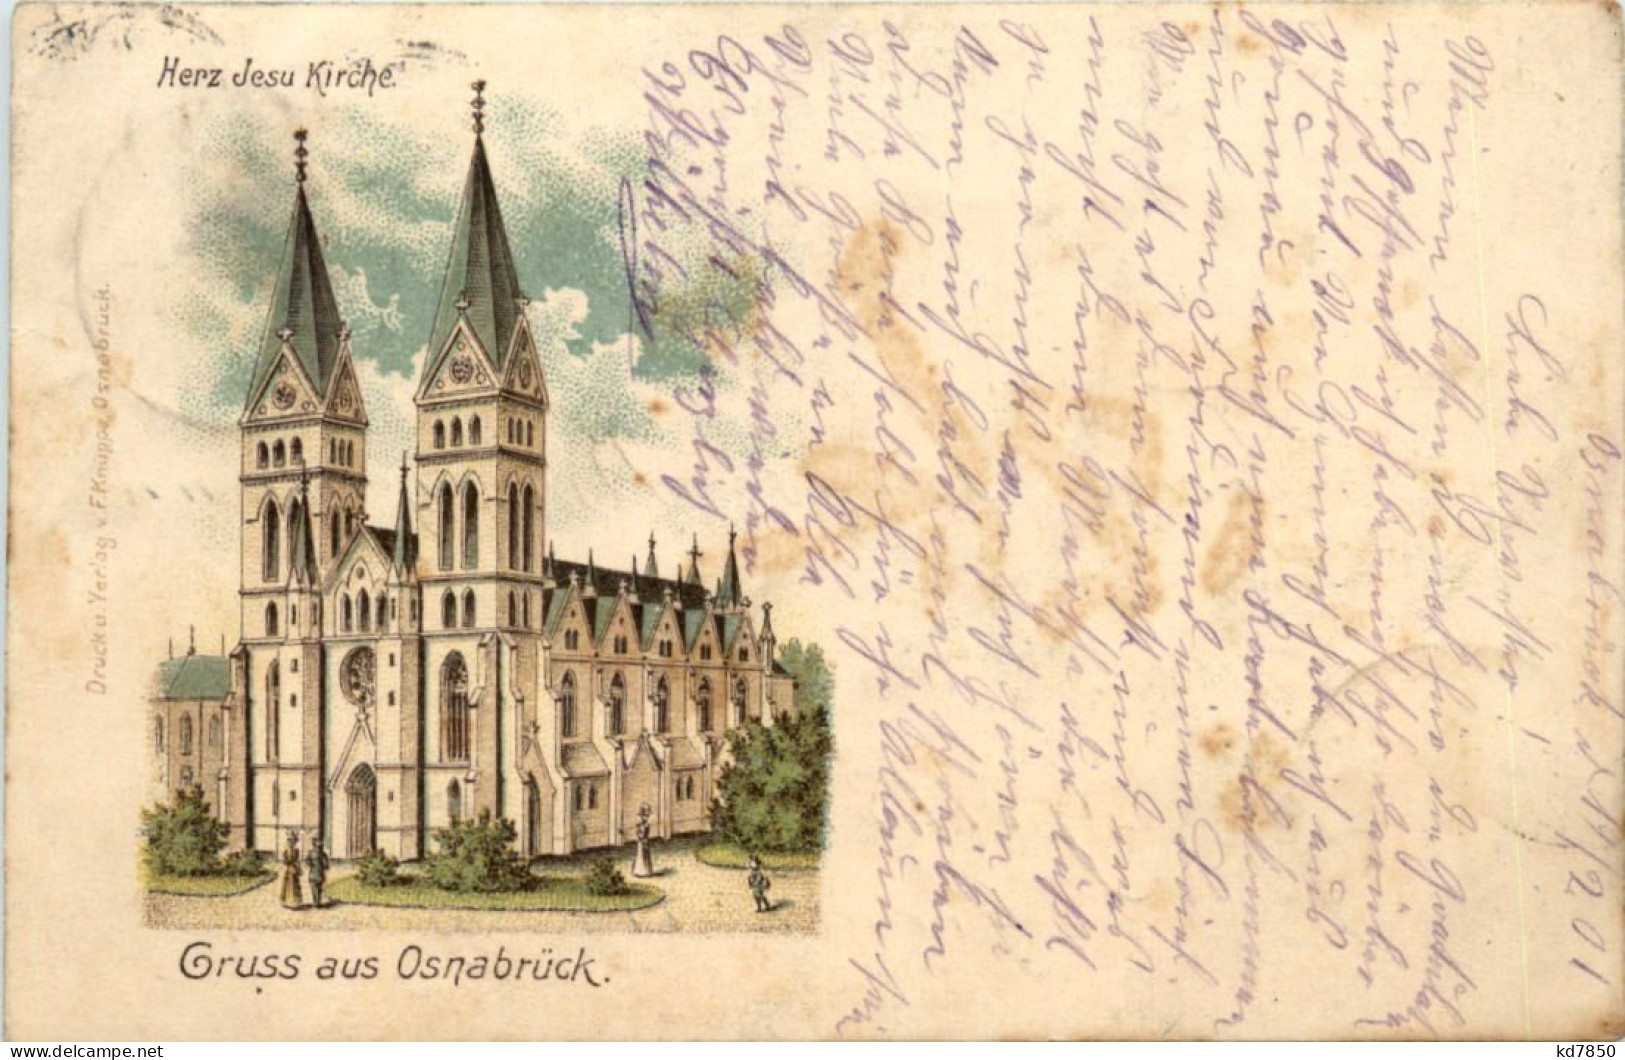 Gruss Aus Osnabrück - Herz Jesu Kirche - Litho - Osnabrueck